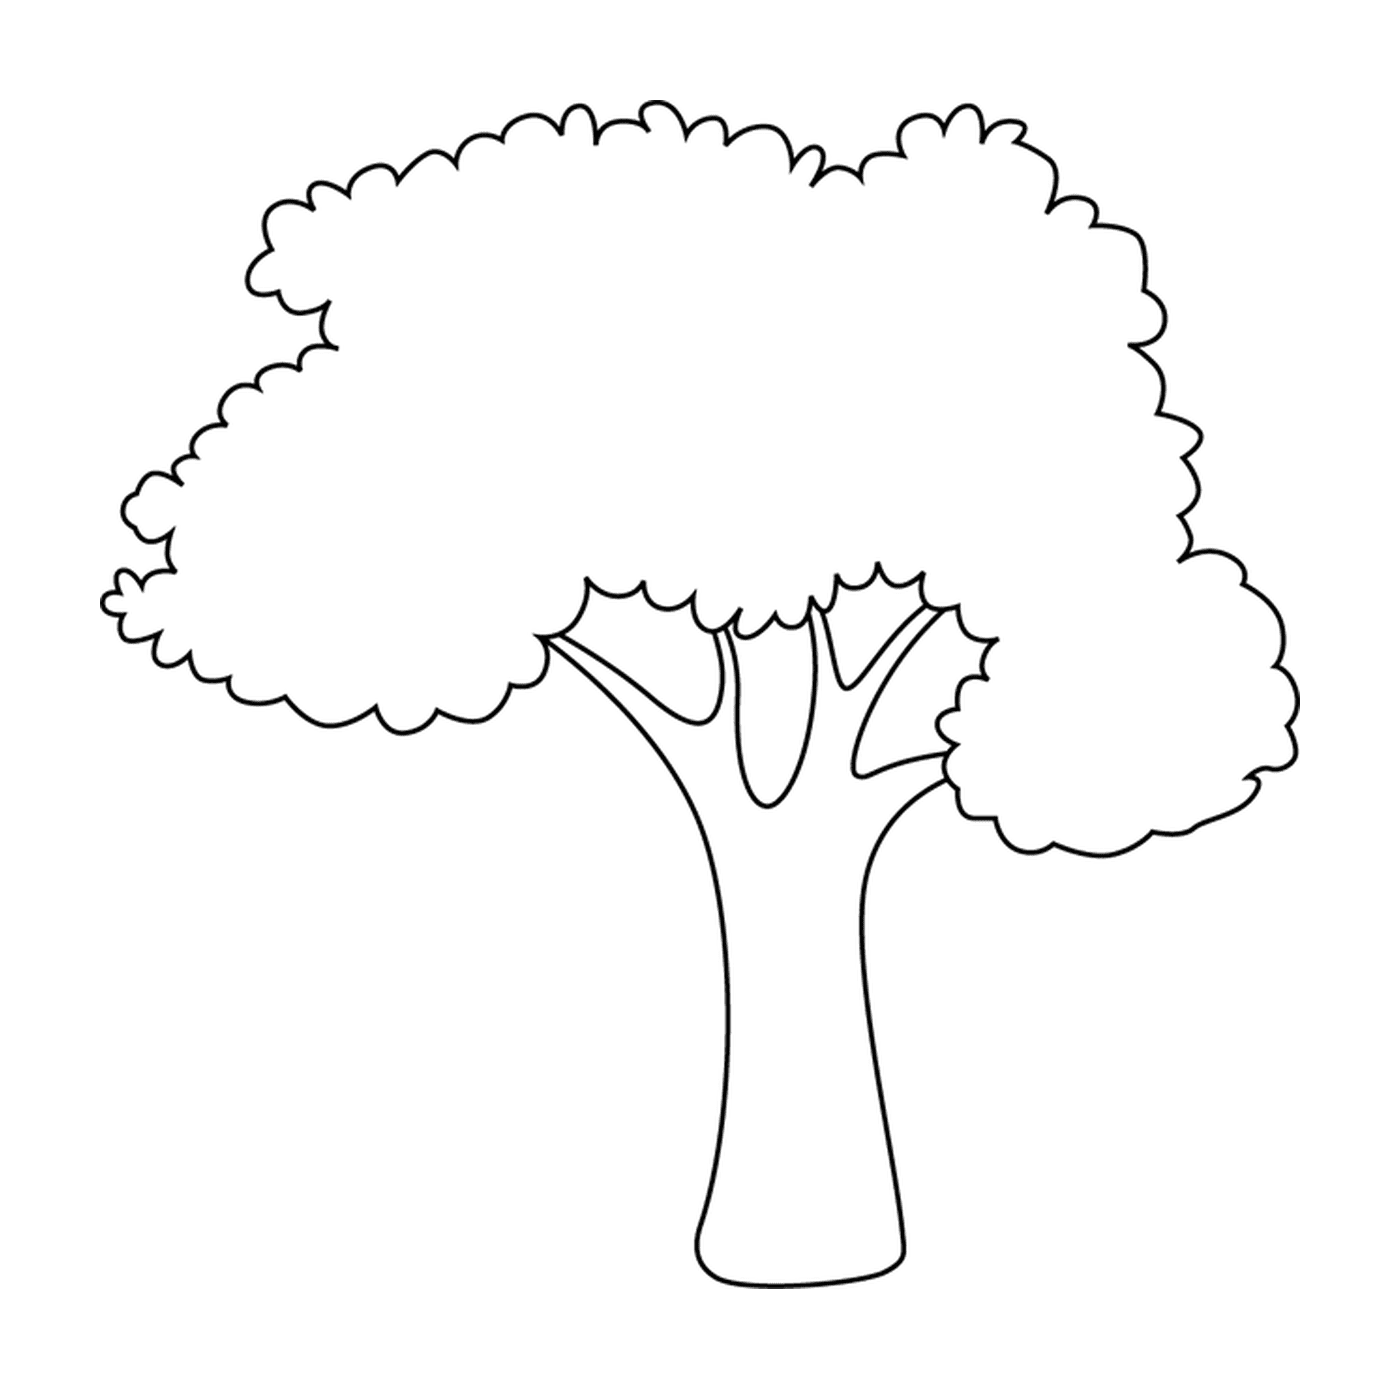  Ein einfacher und einfacher Baum 